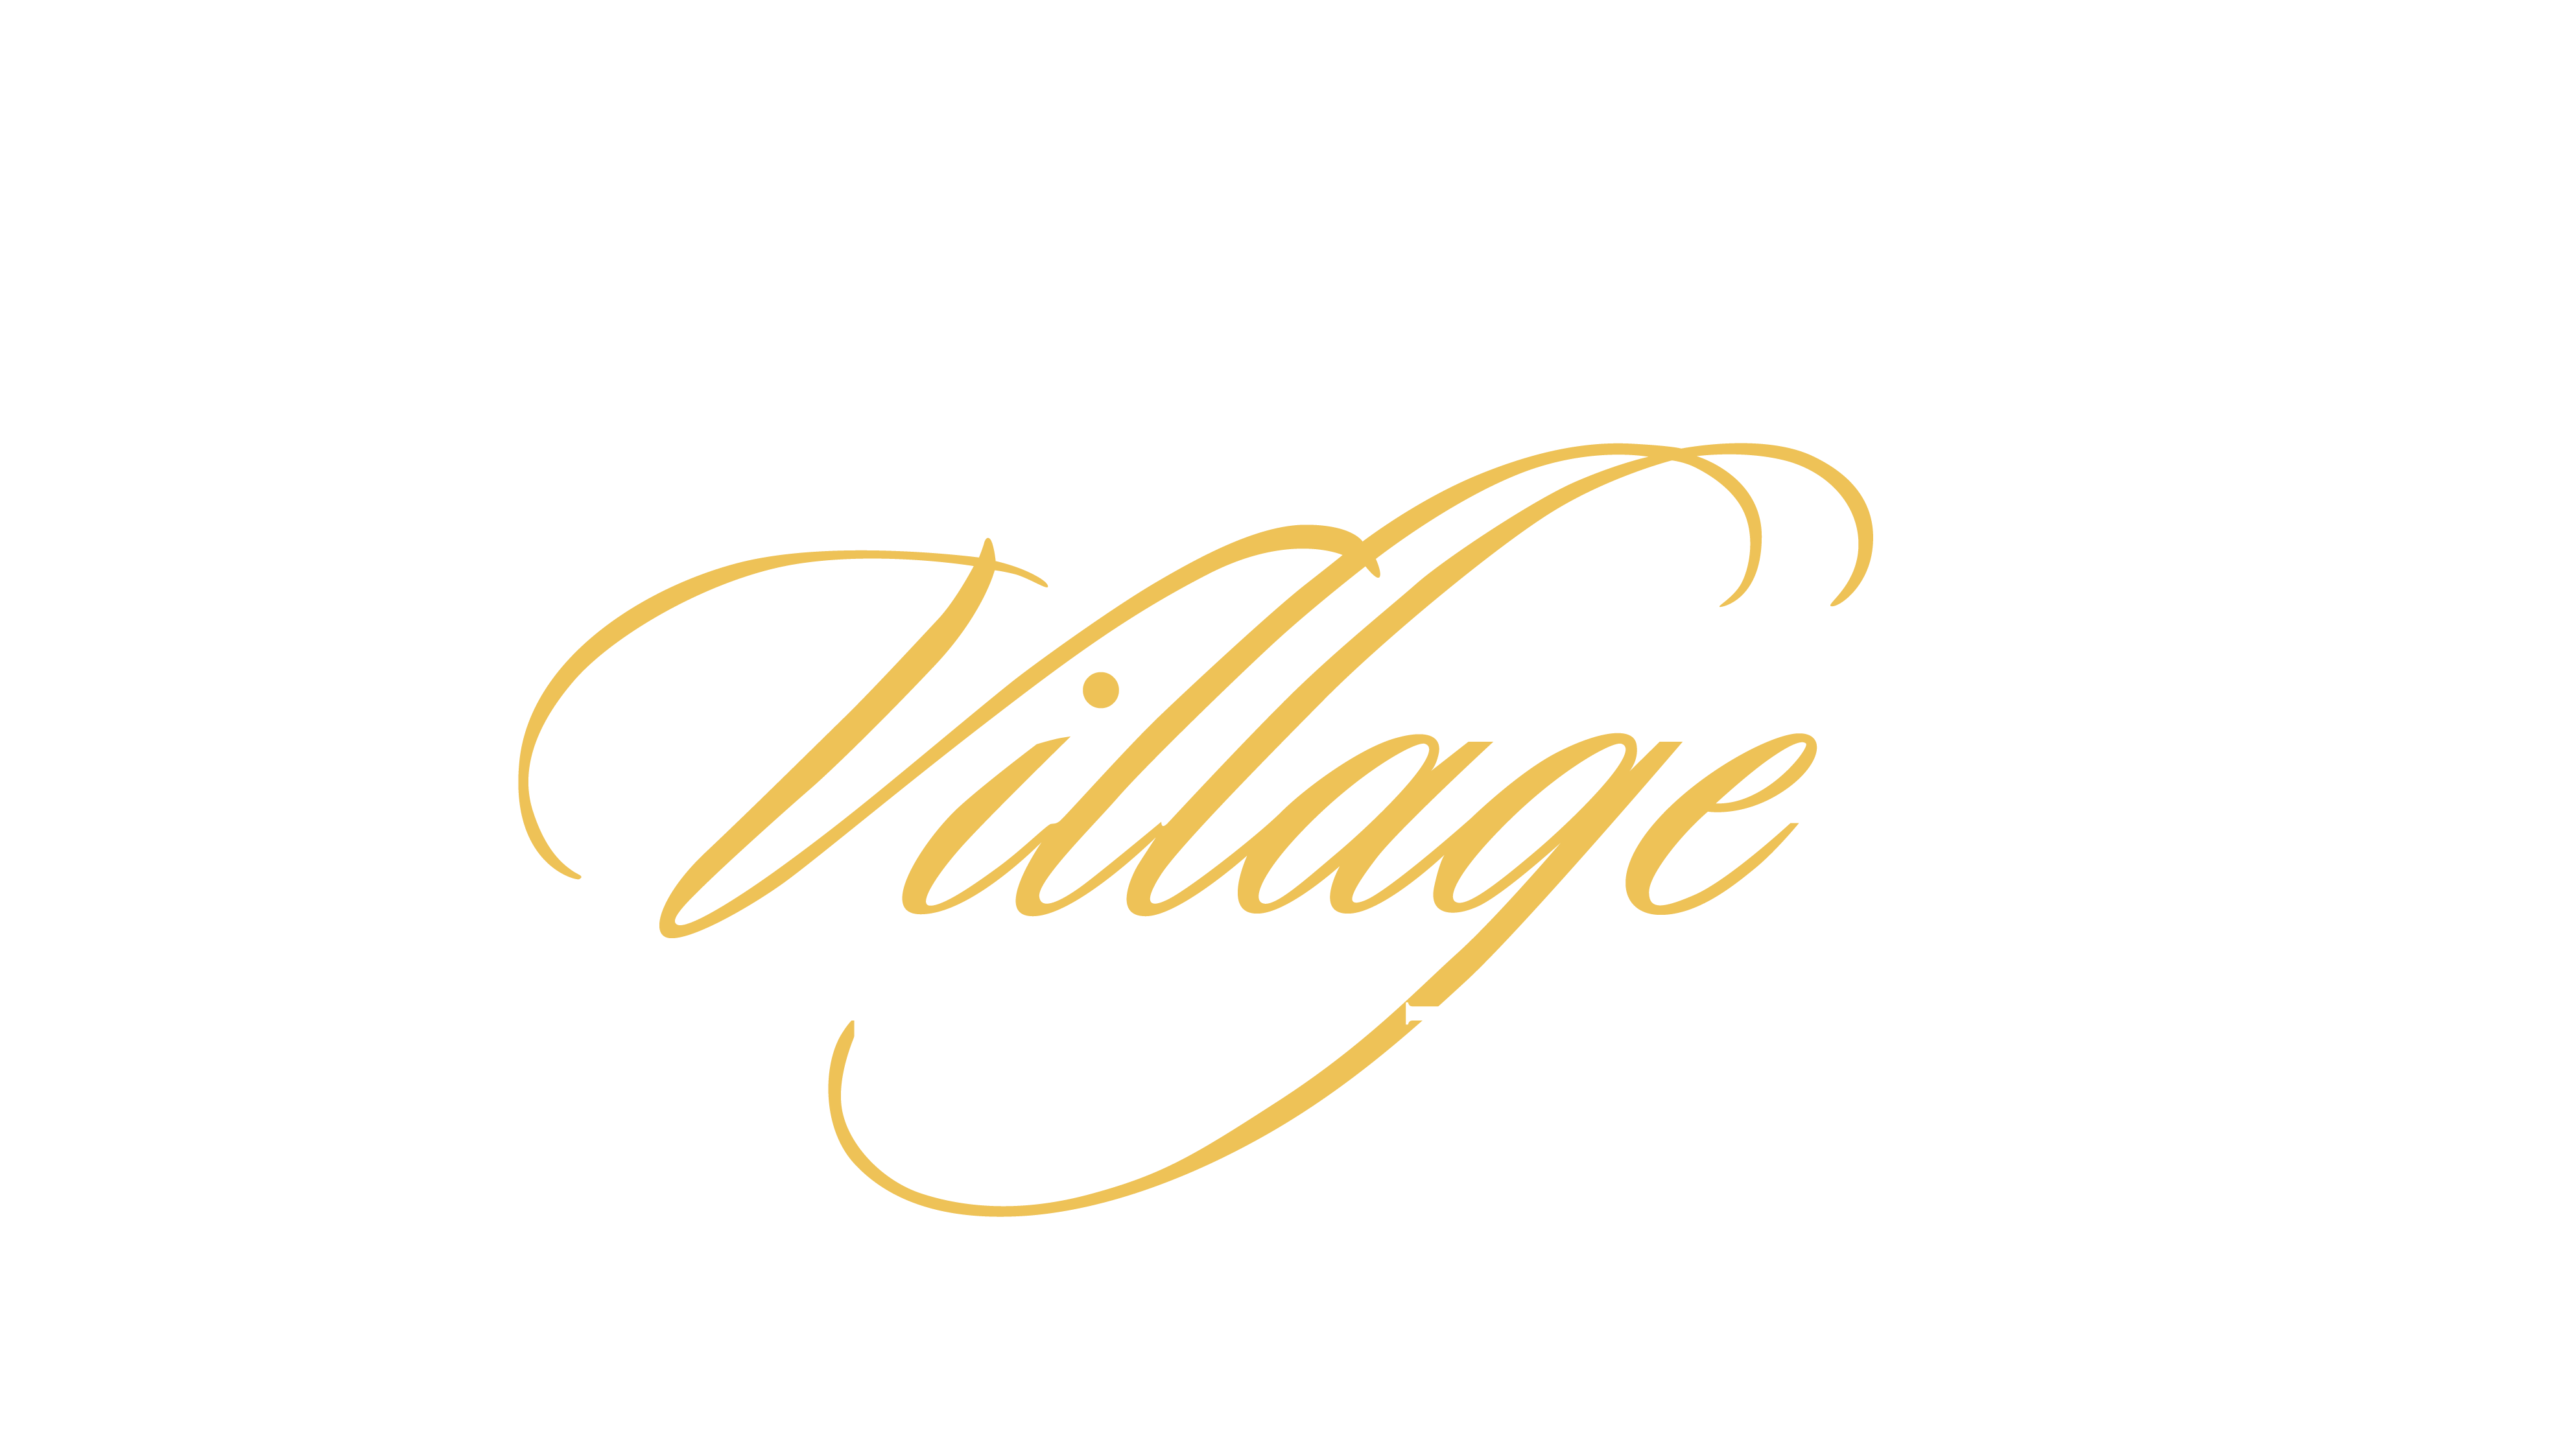 Heritage Village logo